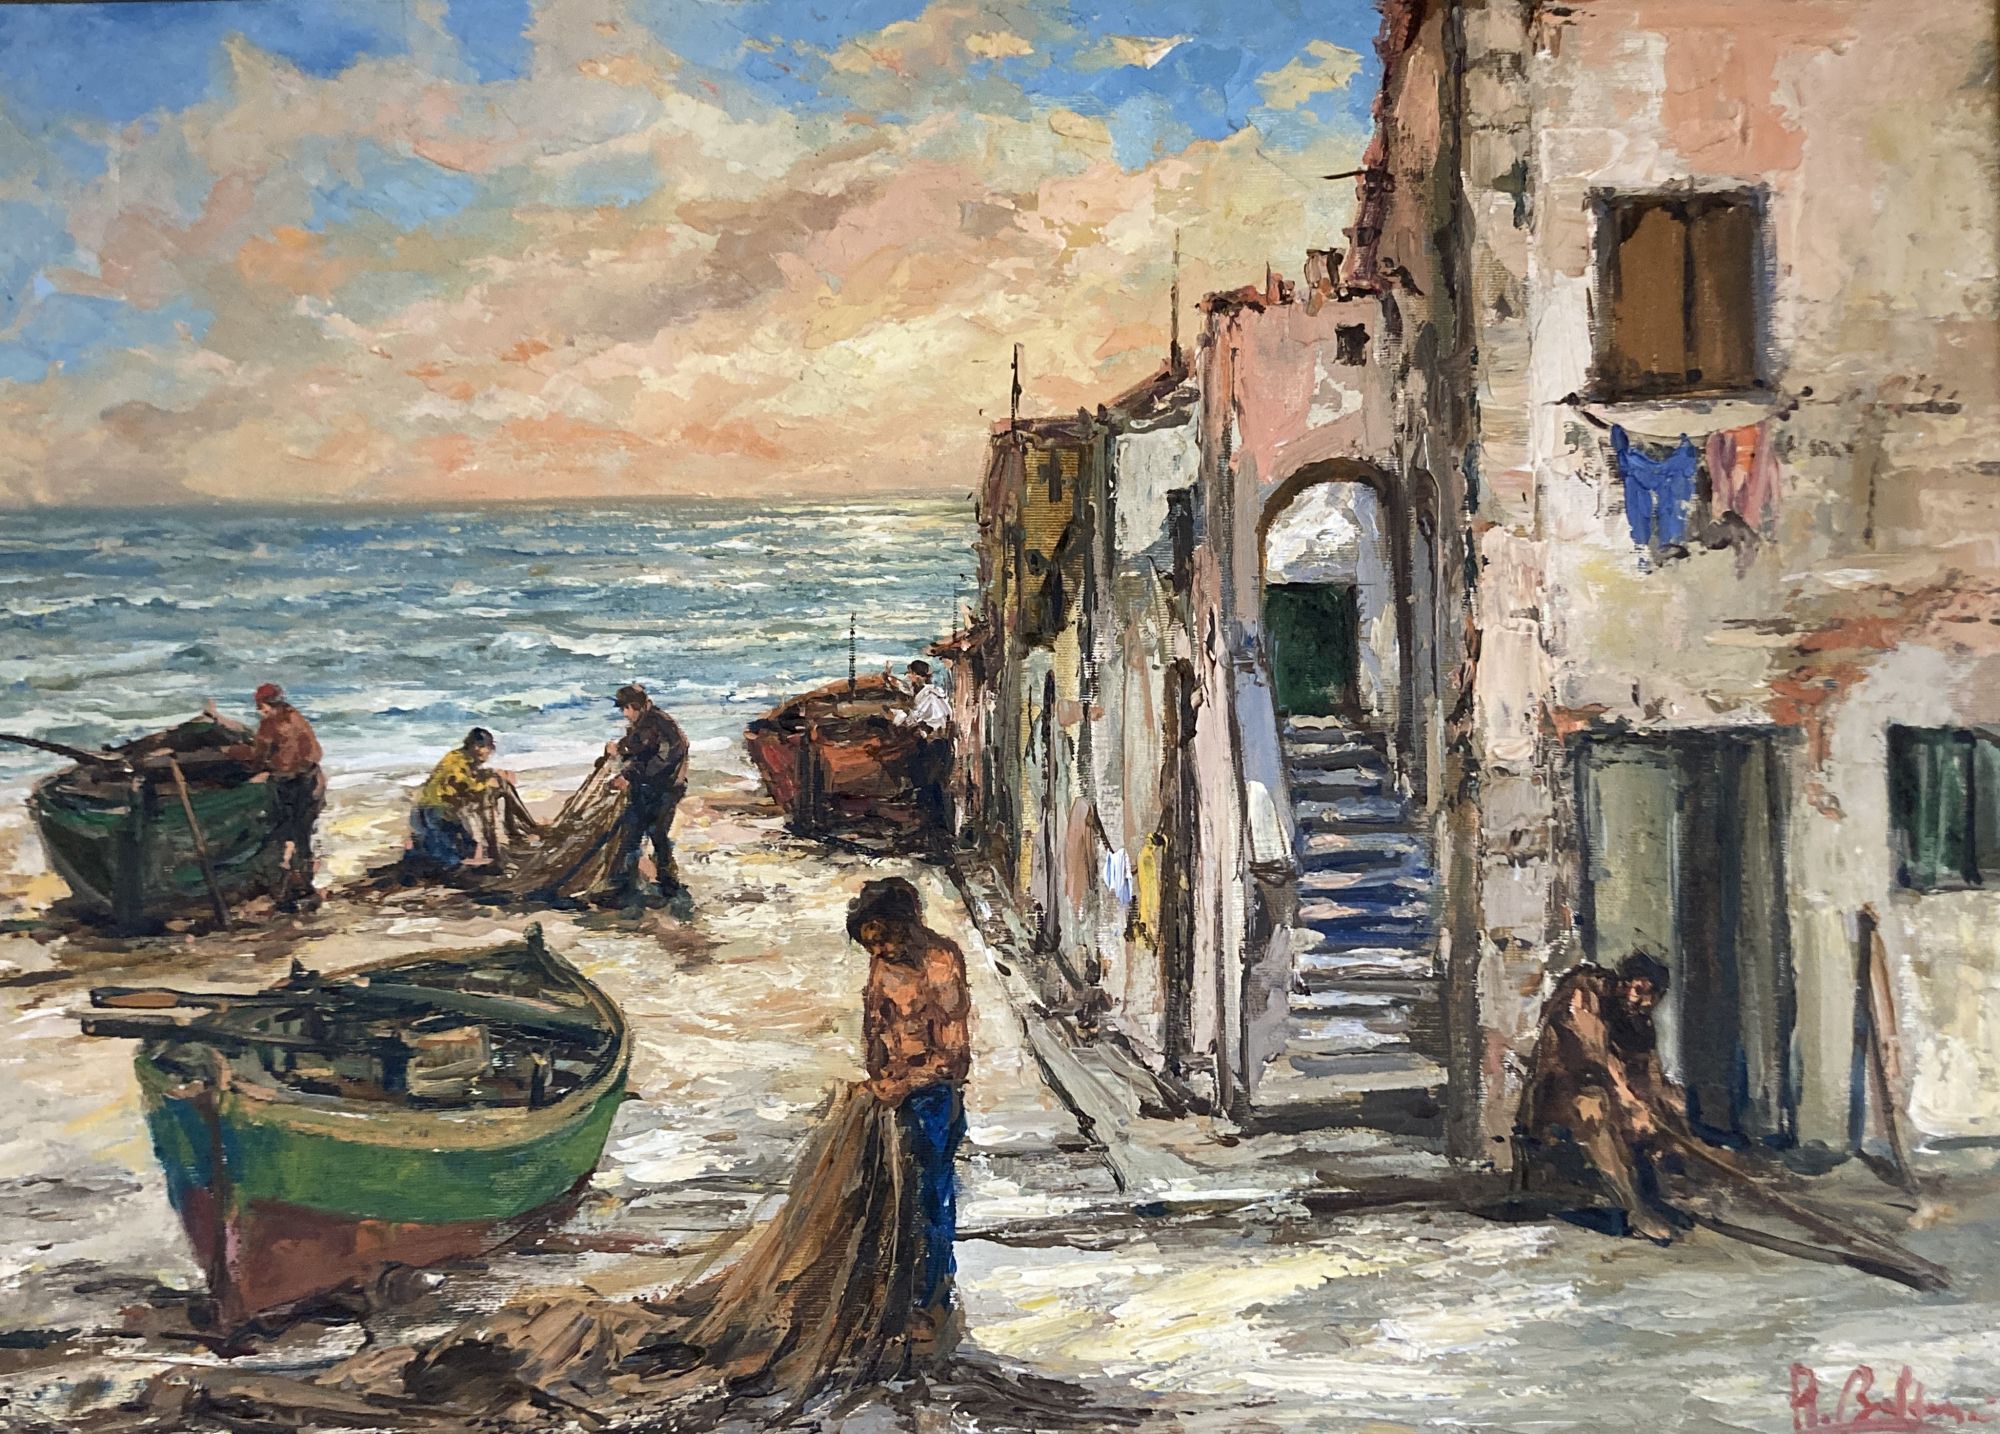 Roberto Baldassarini, oil on canvas, Liguria Villaggio di Pescatori, signed with 1985 label verso, 50 x 70cm